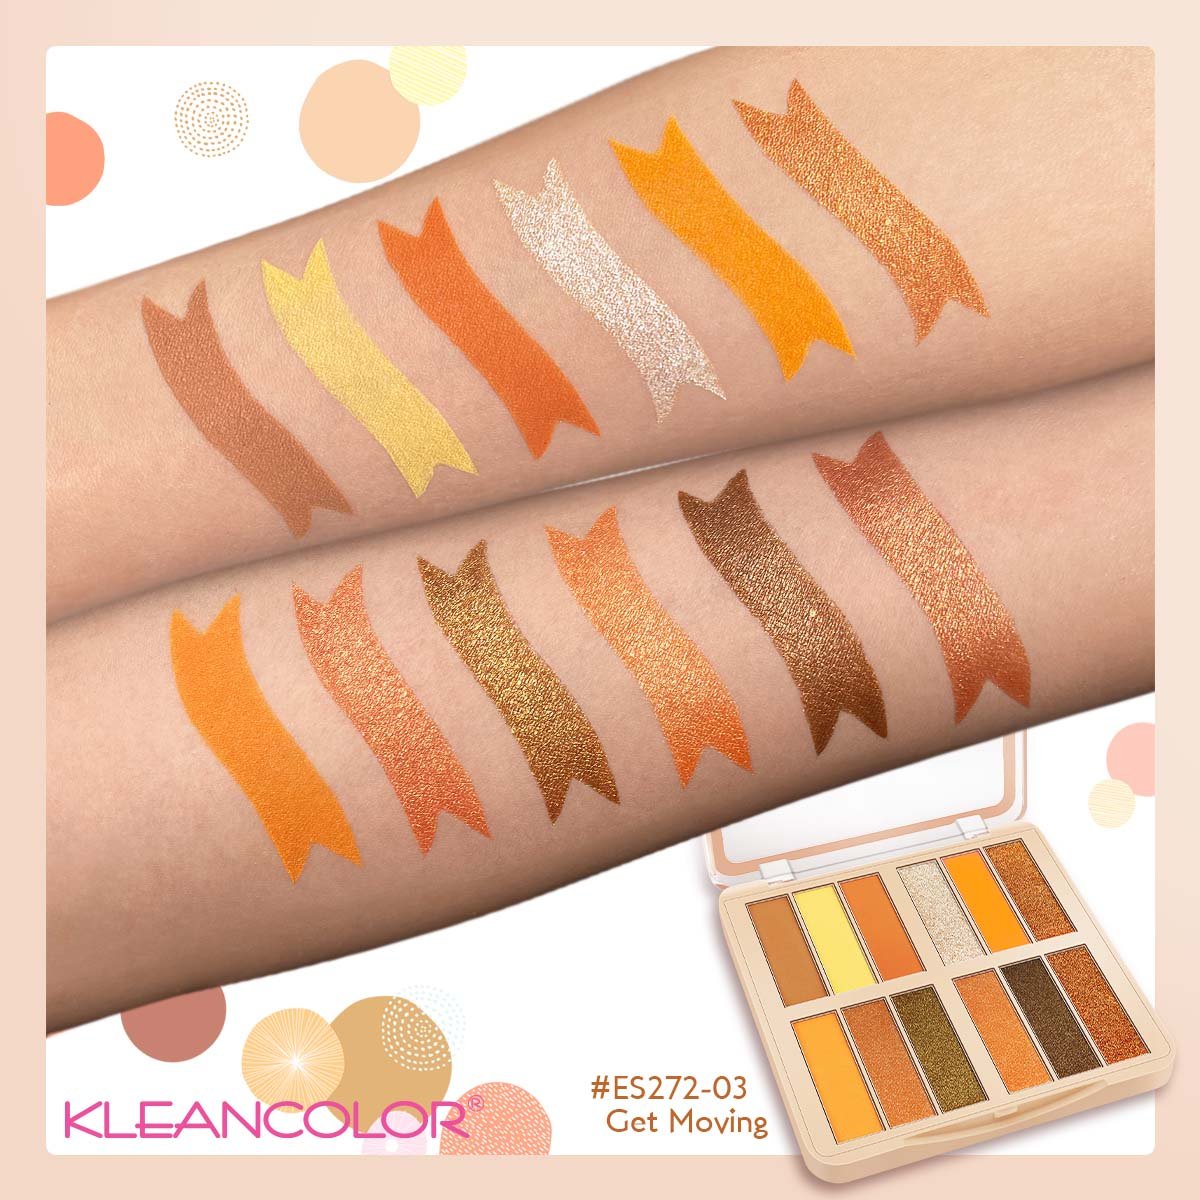 Kleancolor - Mood Boosting Pressed Pigment Palette Get Moving